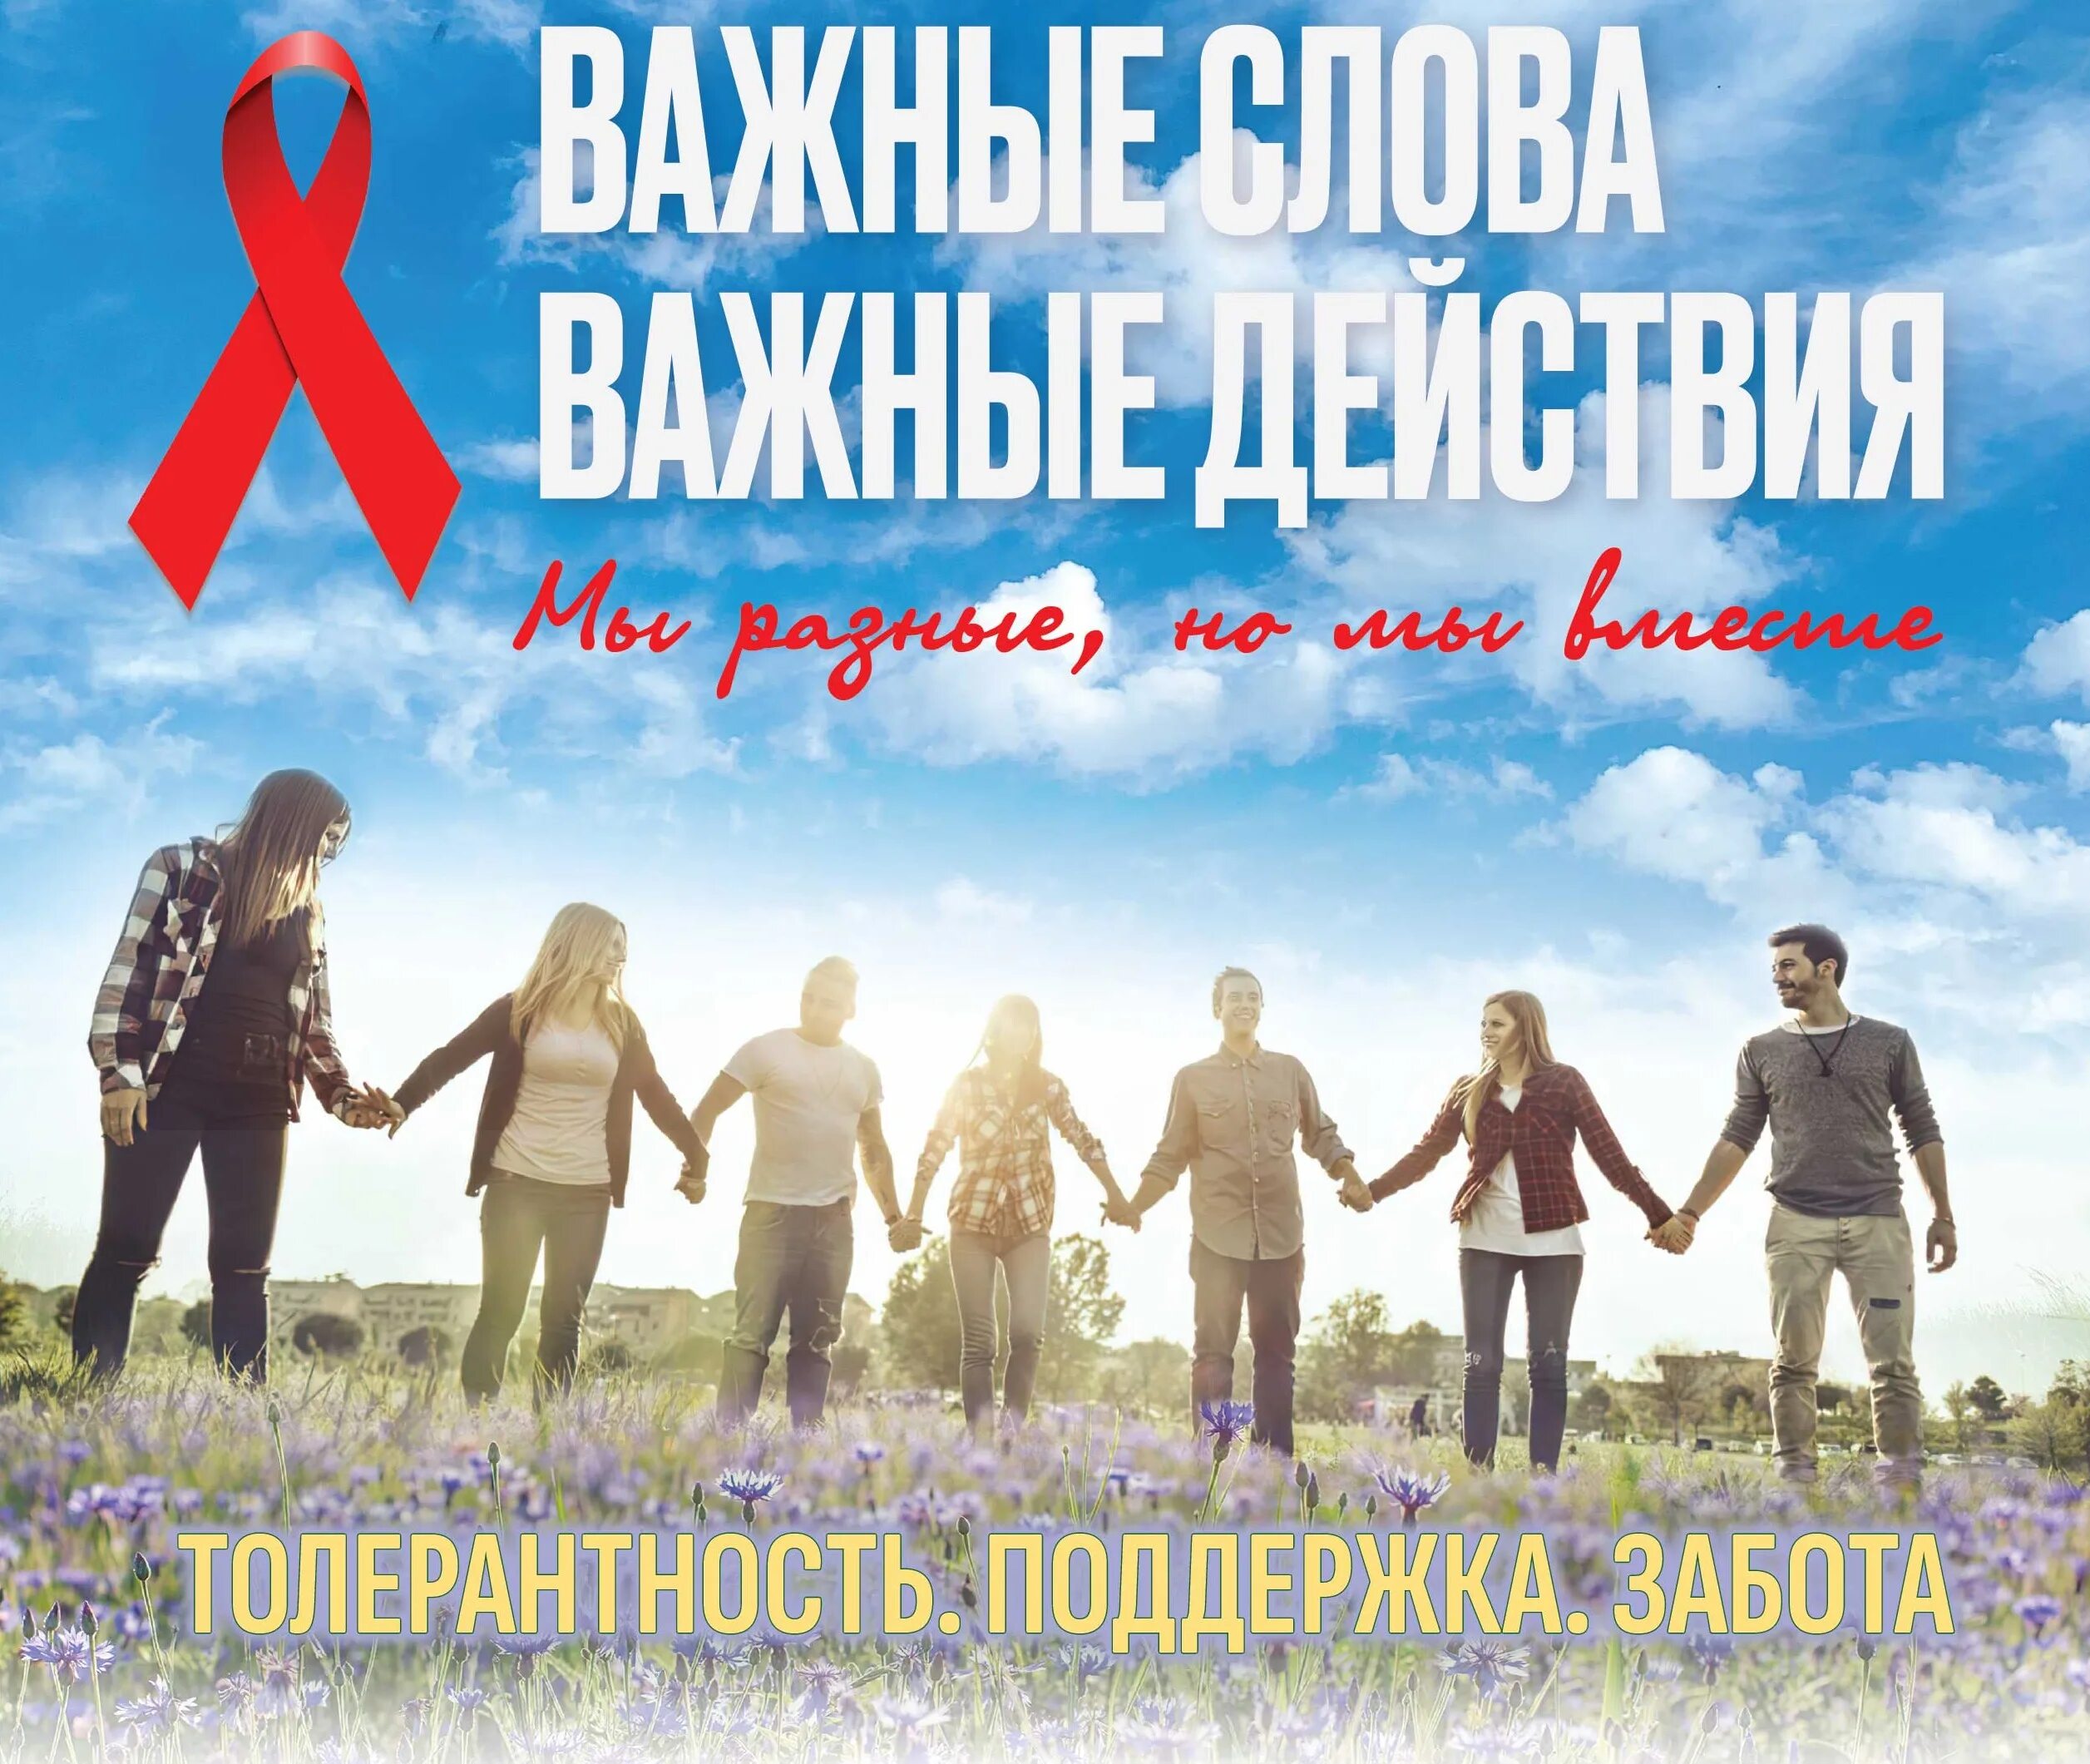 Всемирный день борьбы со СПИДОМ. 1 Декабря Всемирный день борьбы со СПИДОМ. Всемирный день борьбы со СПИДОМ 2022. Ежегодно 1 декабря отмечается Всемирный день борьбы со СПИДОМ. Спид 2022